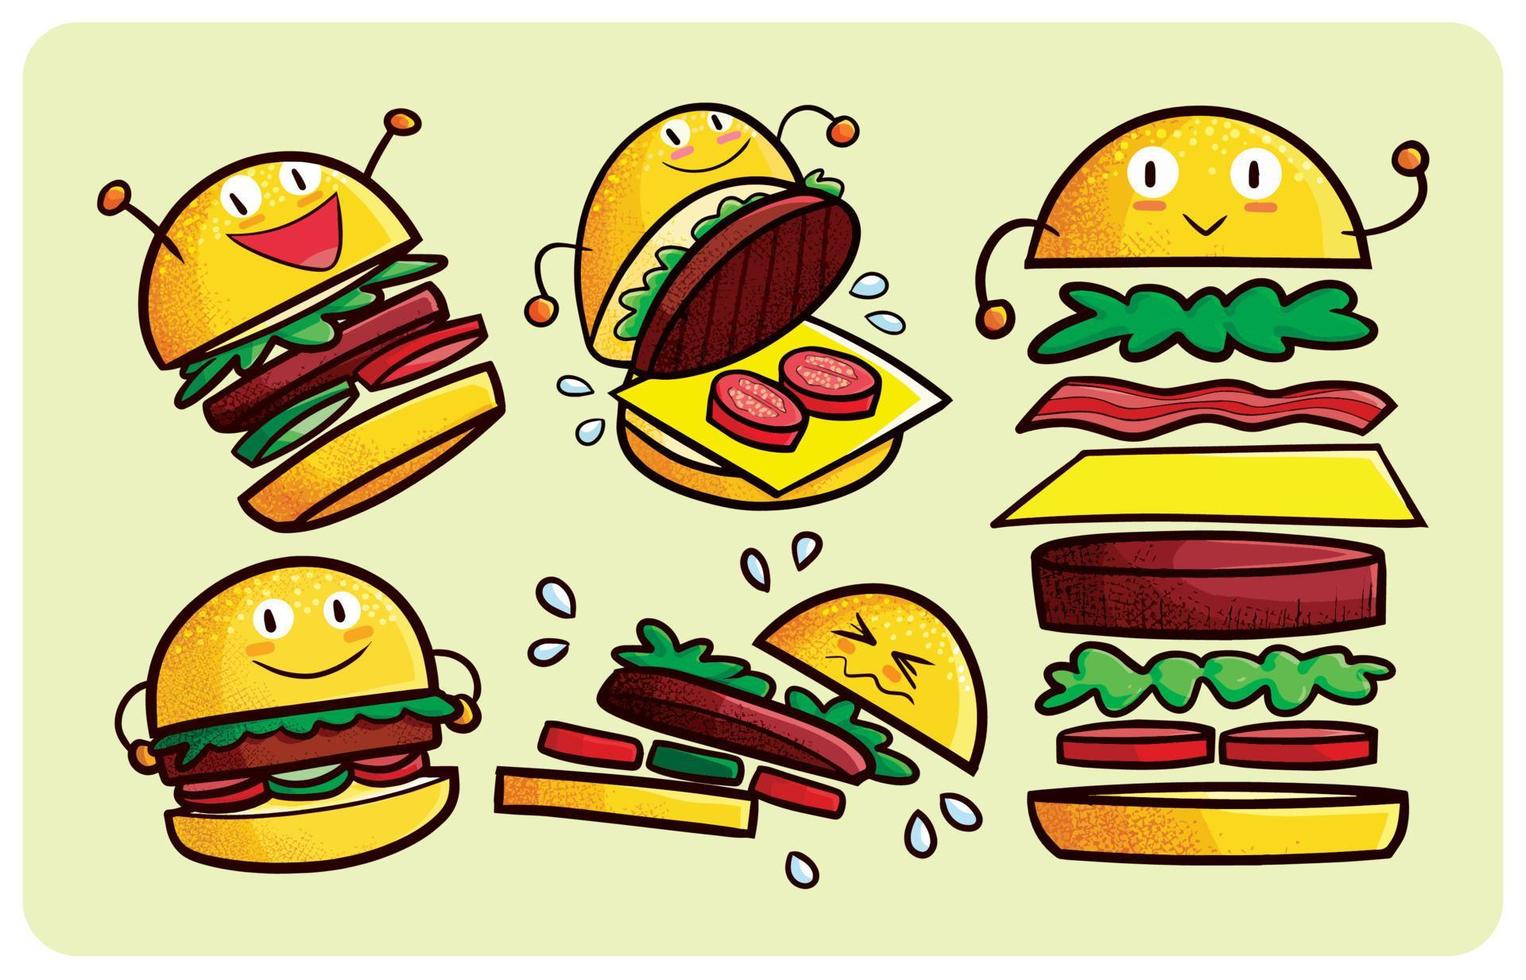 Funny hamburger characters expression set in kawaii style vector